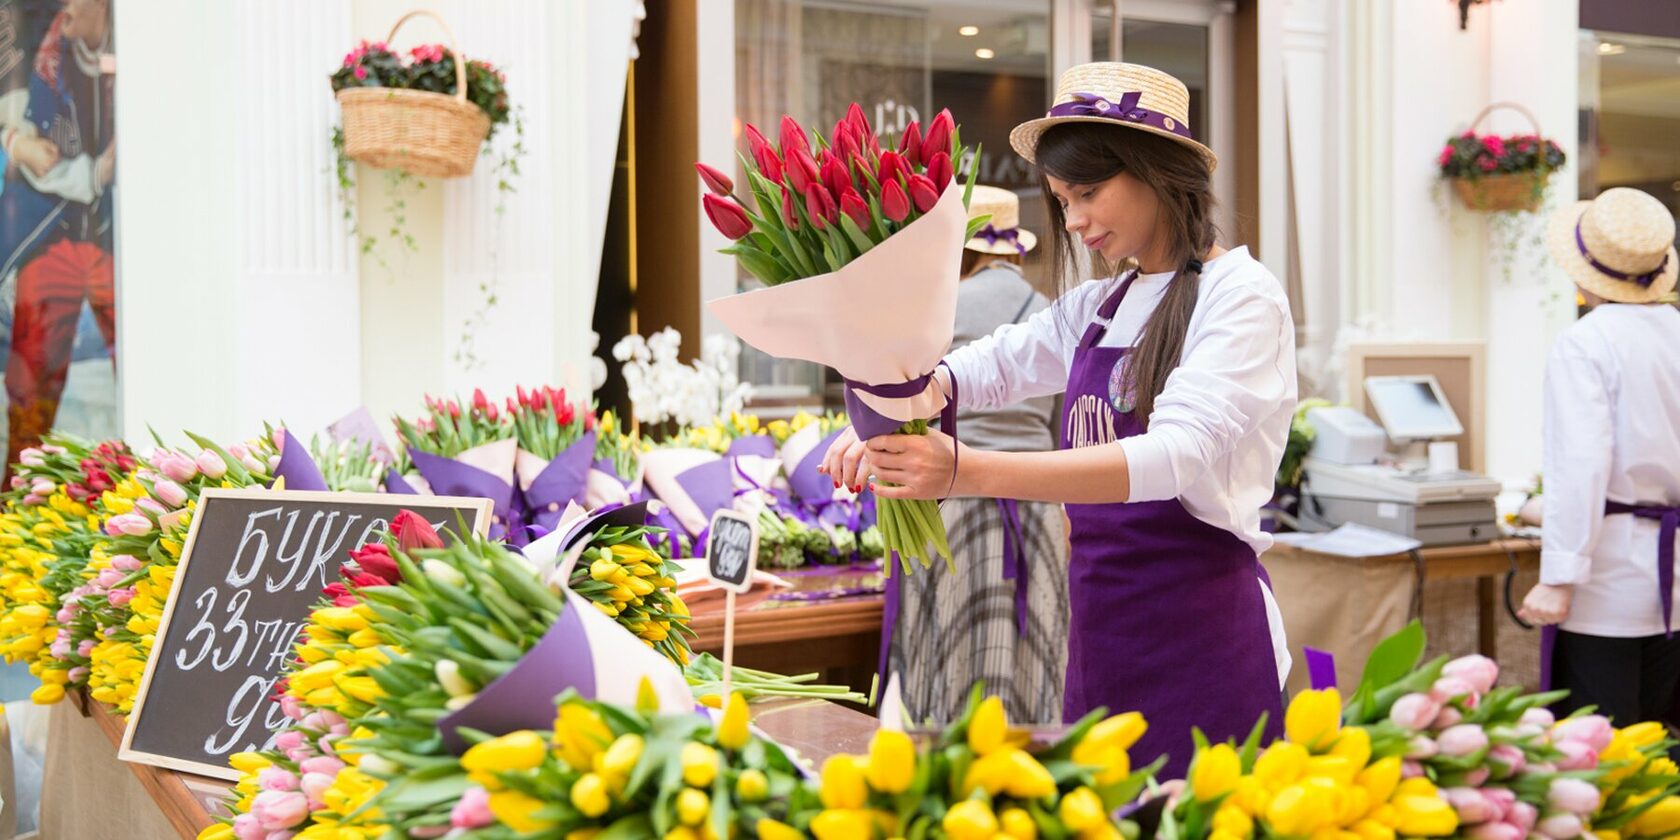 Заложите в закупку расходы на экспериментальные цветы и сорта. А вот то, что пользуется спросом каждый год, оставьте без изменений. Обычно это тюльпаны и розы.